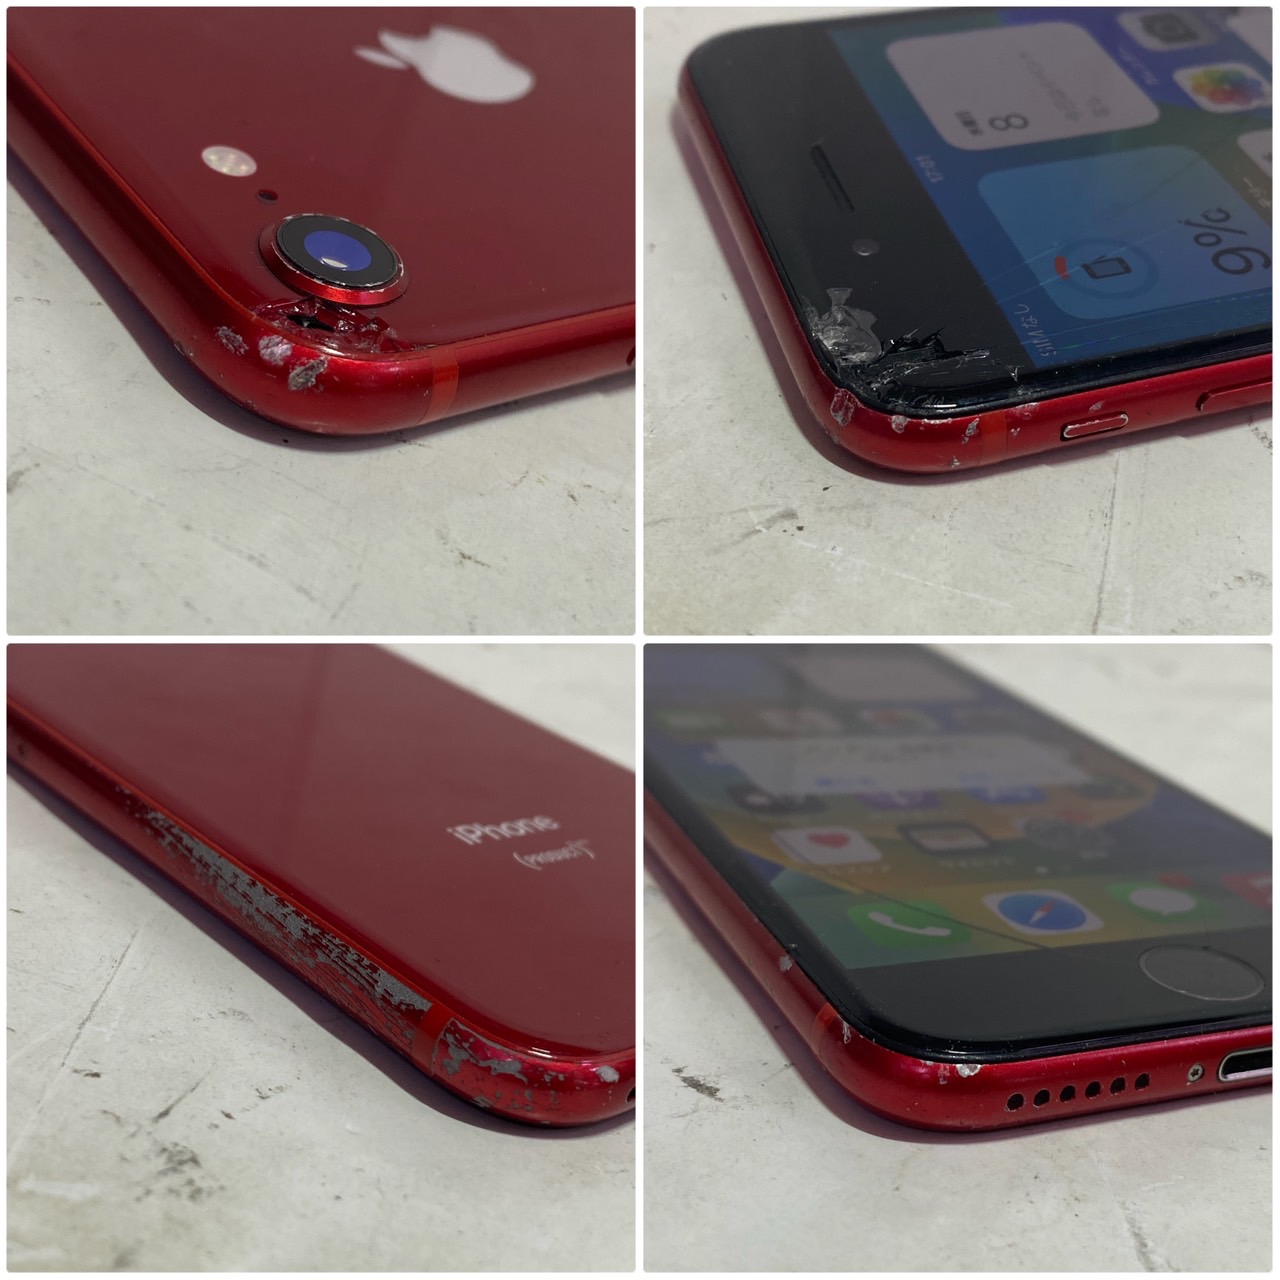 APPLE(アップル) iPhone 8 64GB SIMフリー [レッド]の激安通販 